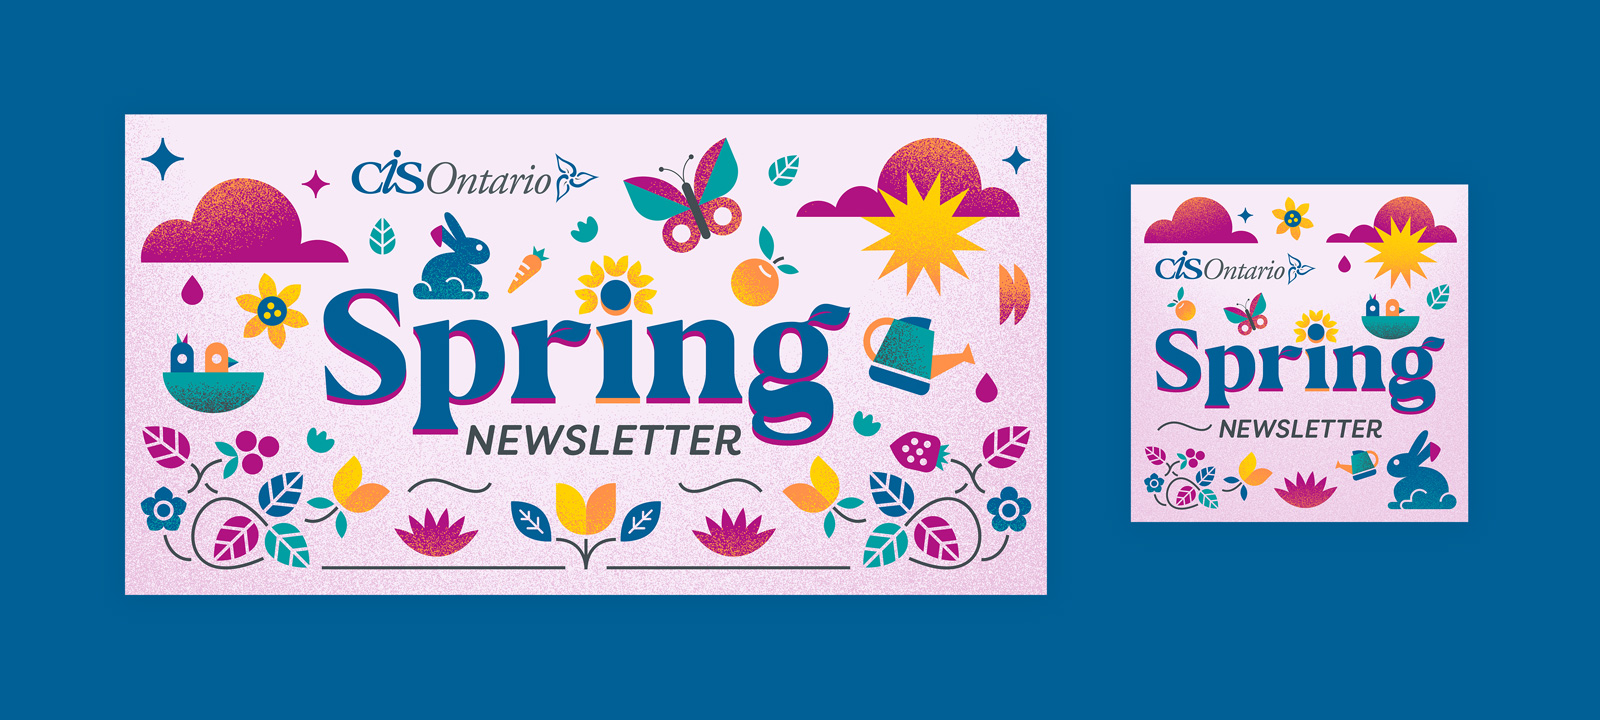 CIS-Ontario-spring